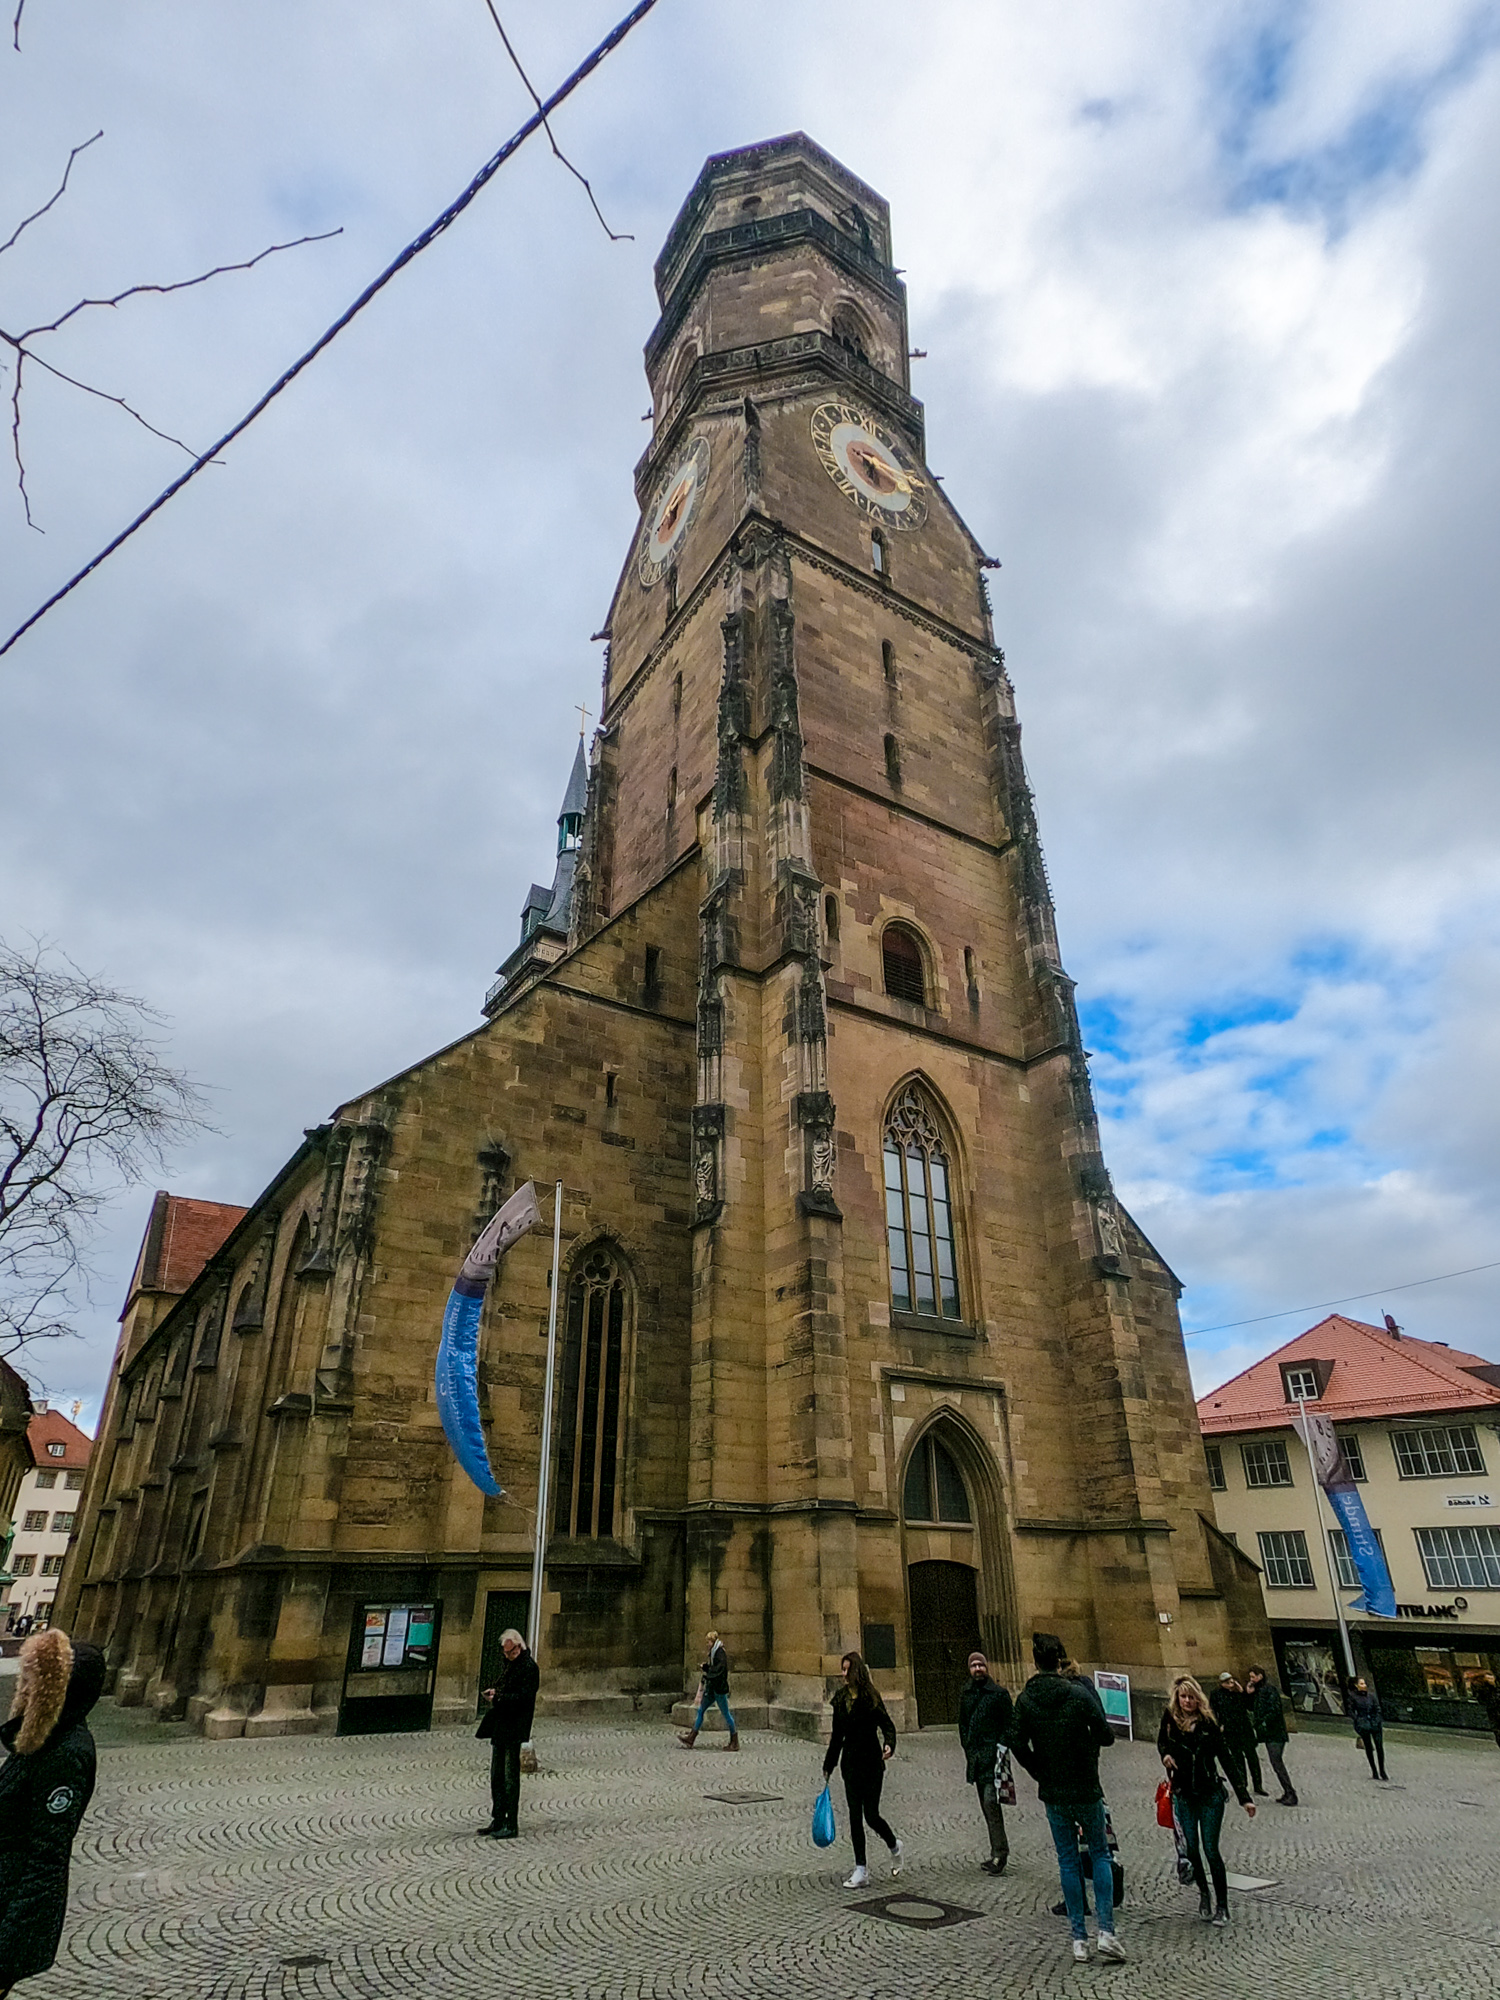 Evanjelický kostol Stiftskirche